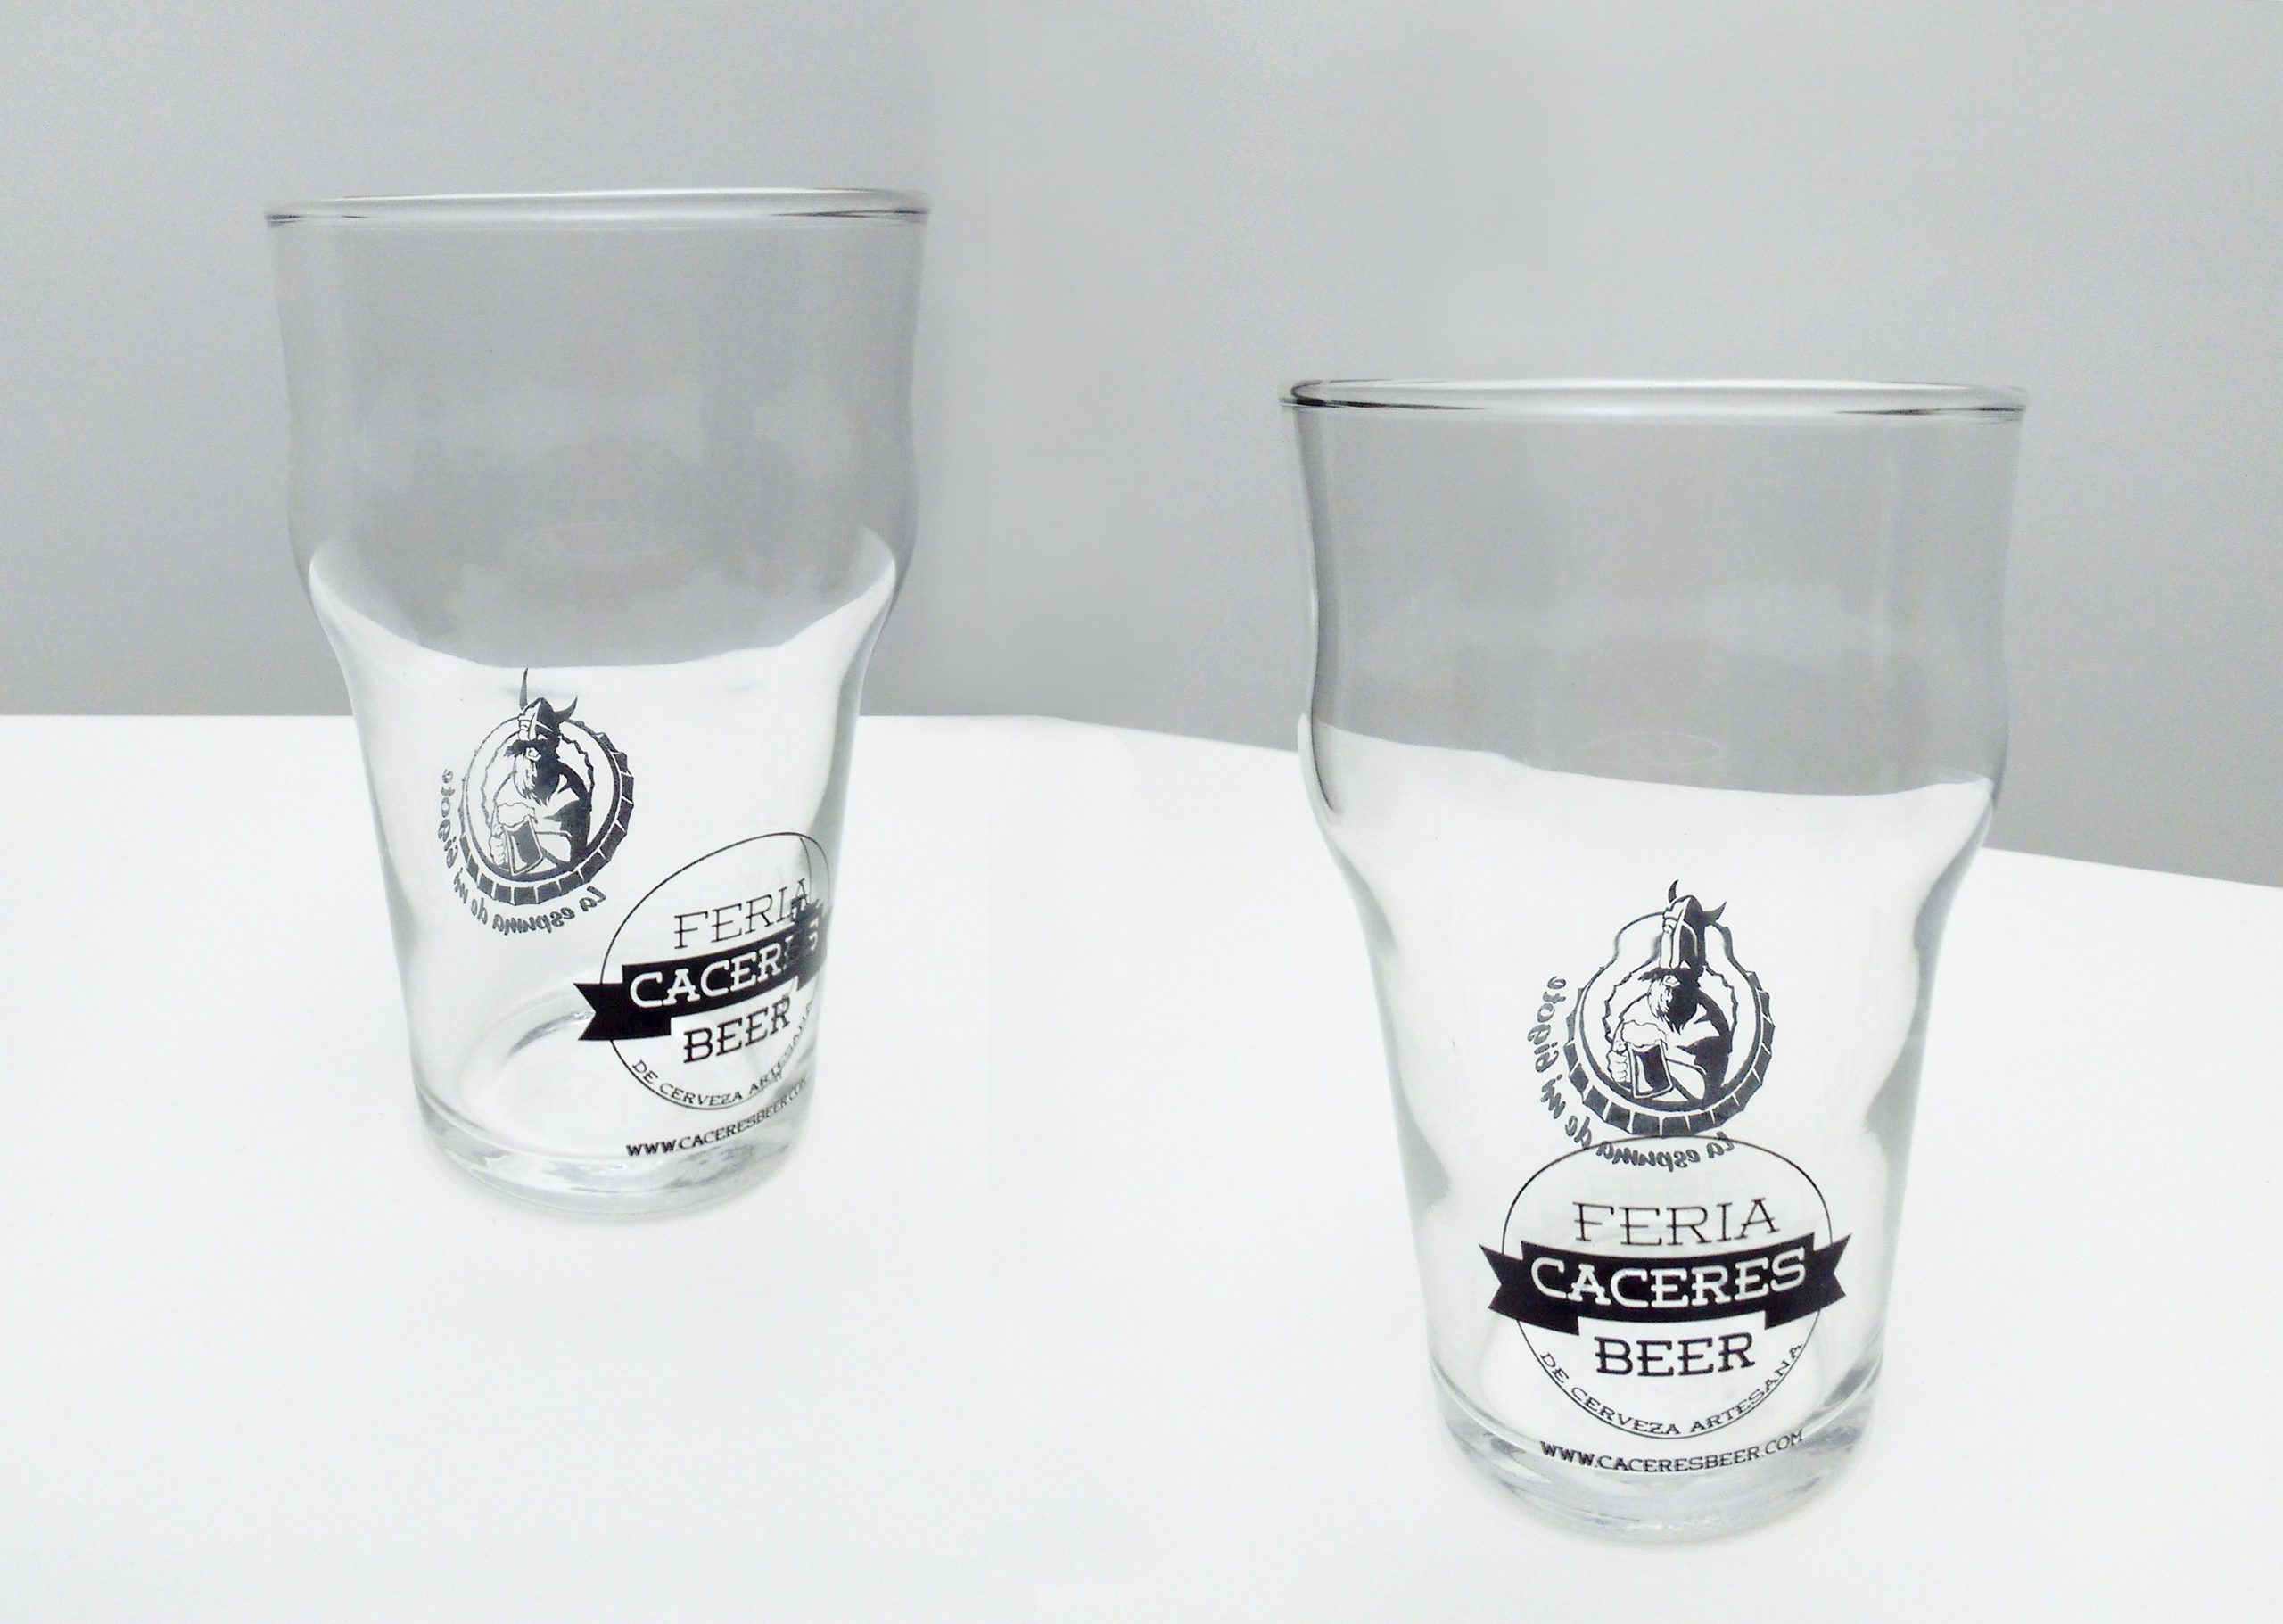 Studio Glass elabora el vaso serigrafiado de la Cáceres Beer 2016